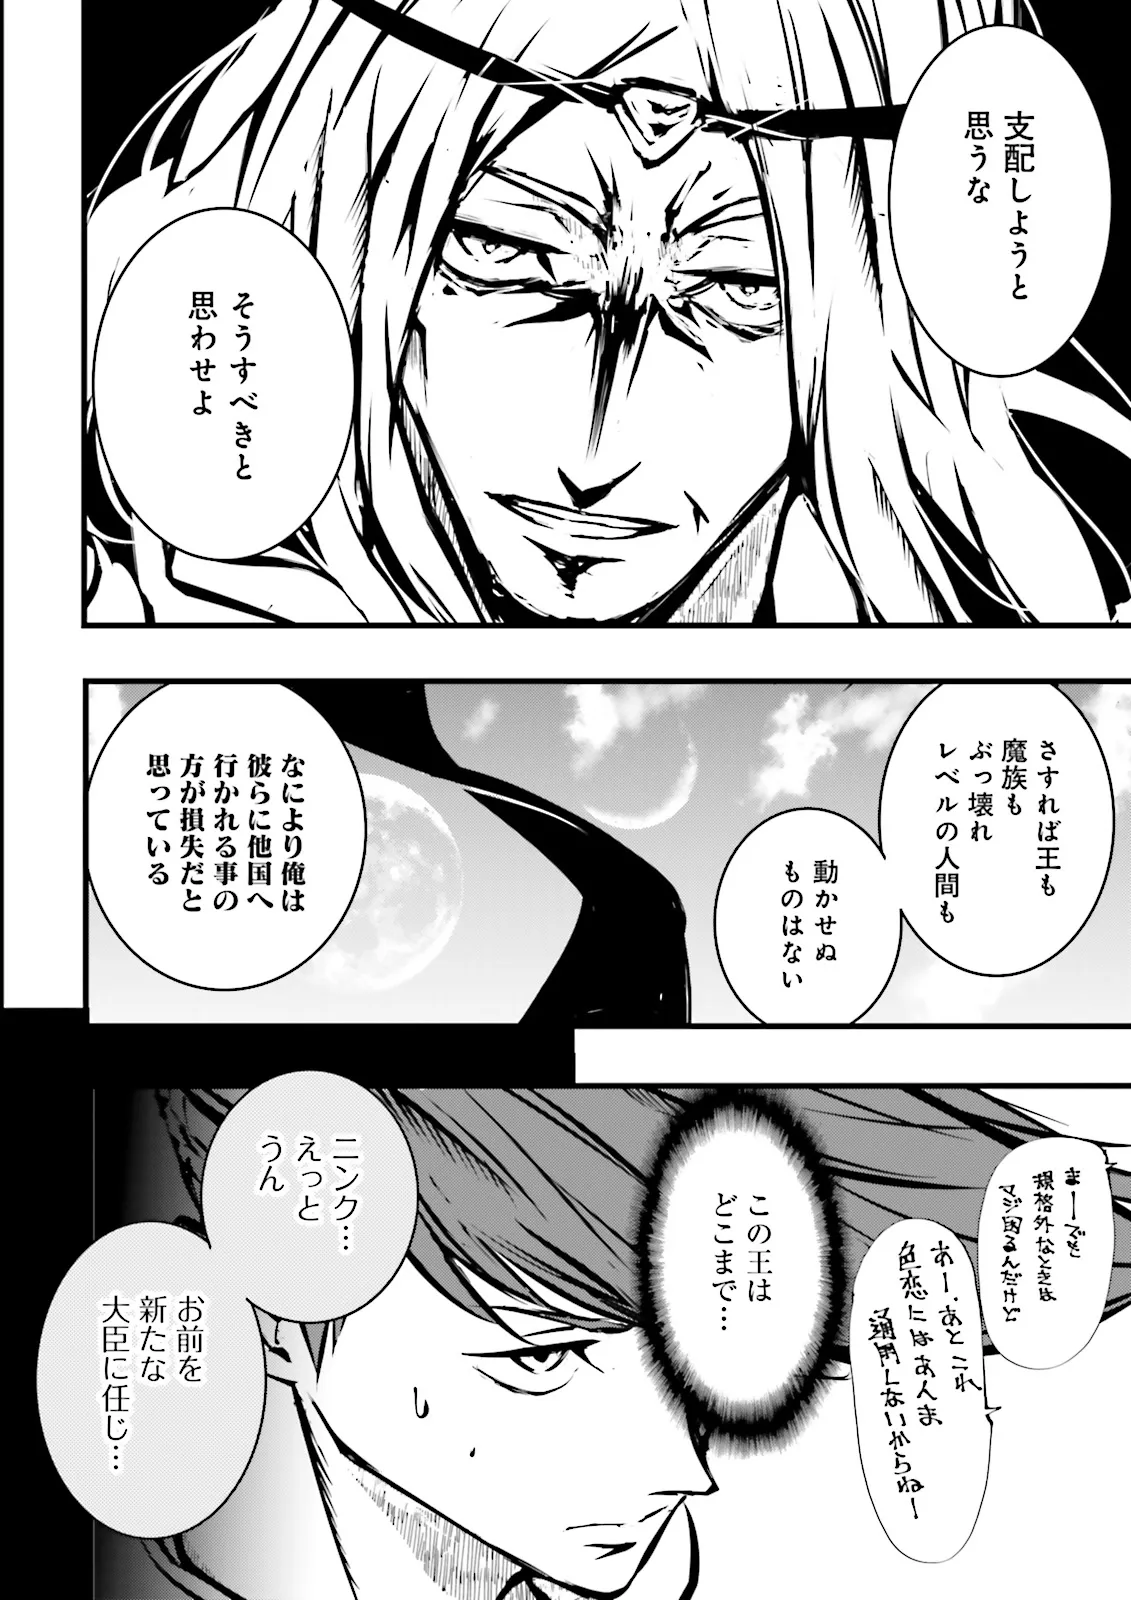 Sukiru Ga Nakereba Level wo Ageru ~ 99 Ga Kansuto No Sekai De Reberu 800 Man Kara Sutato ~ - Chapter 40.4 - Page 4